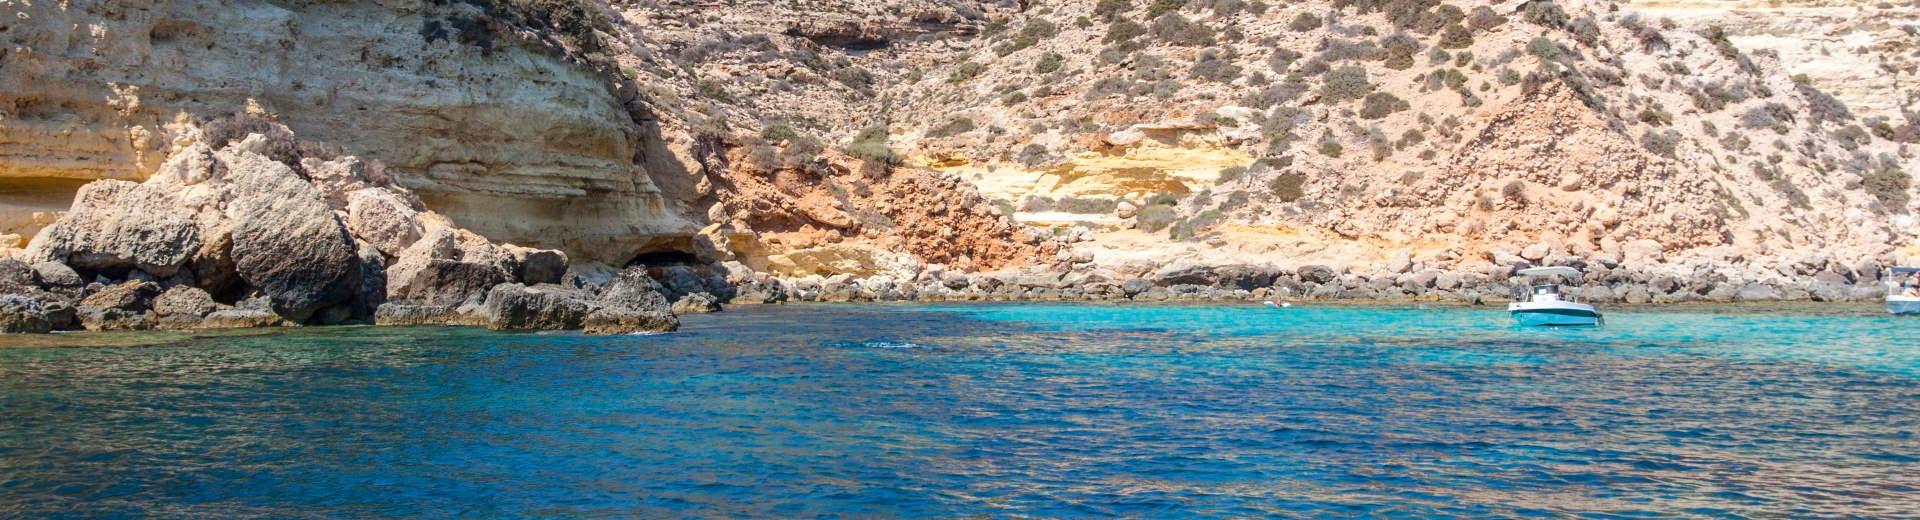 Ferienwohnungen & Ferienhäuser für Urlaub Malta - Casamundo